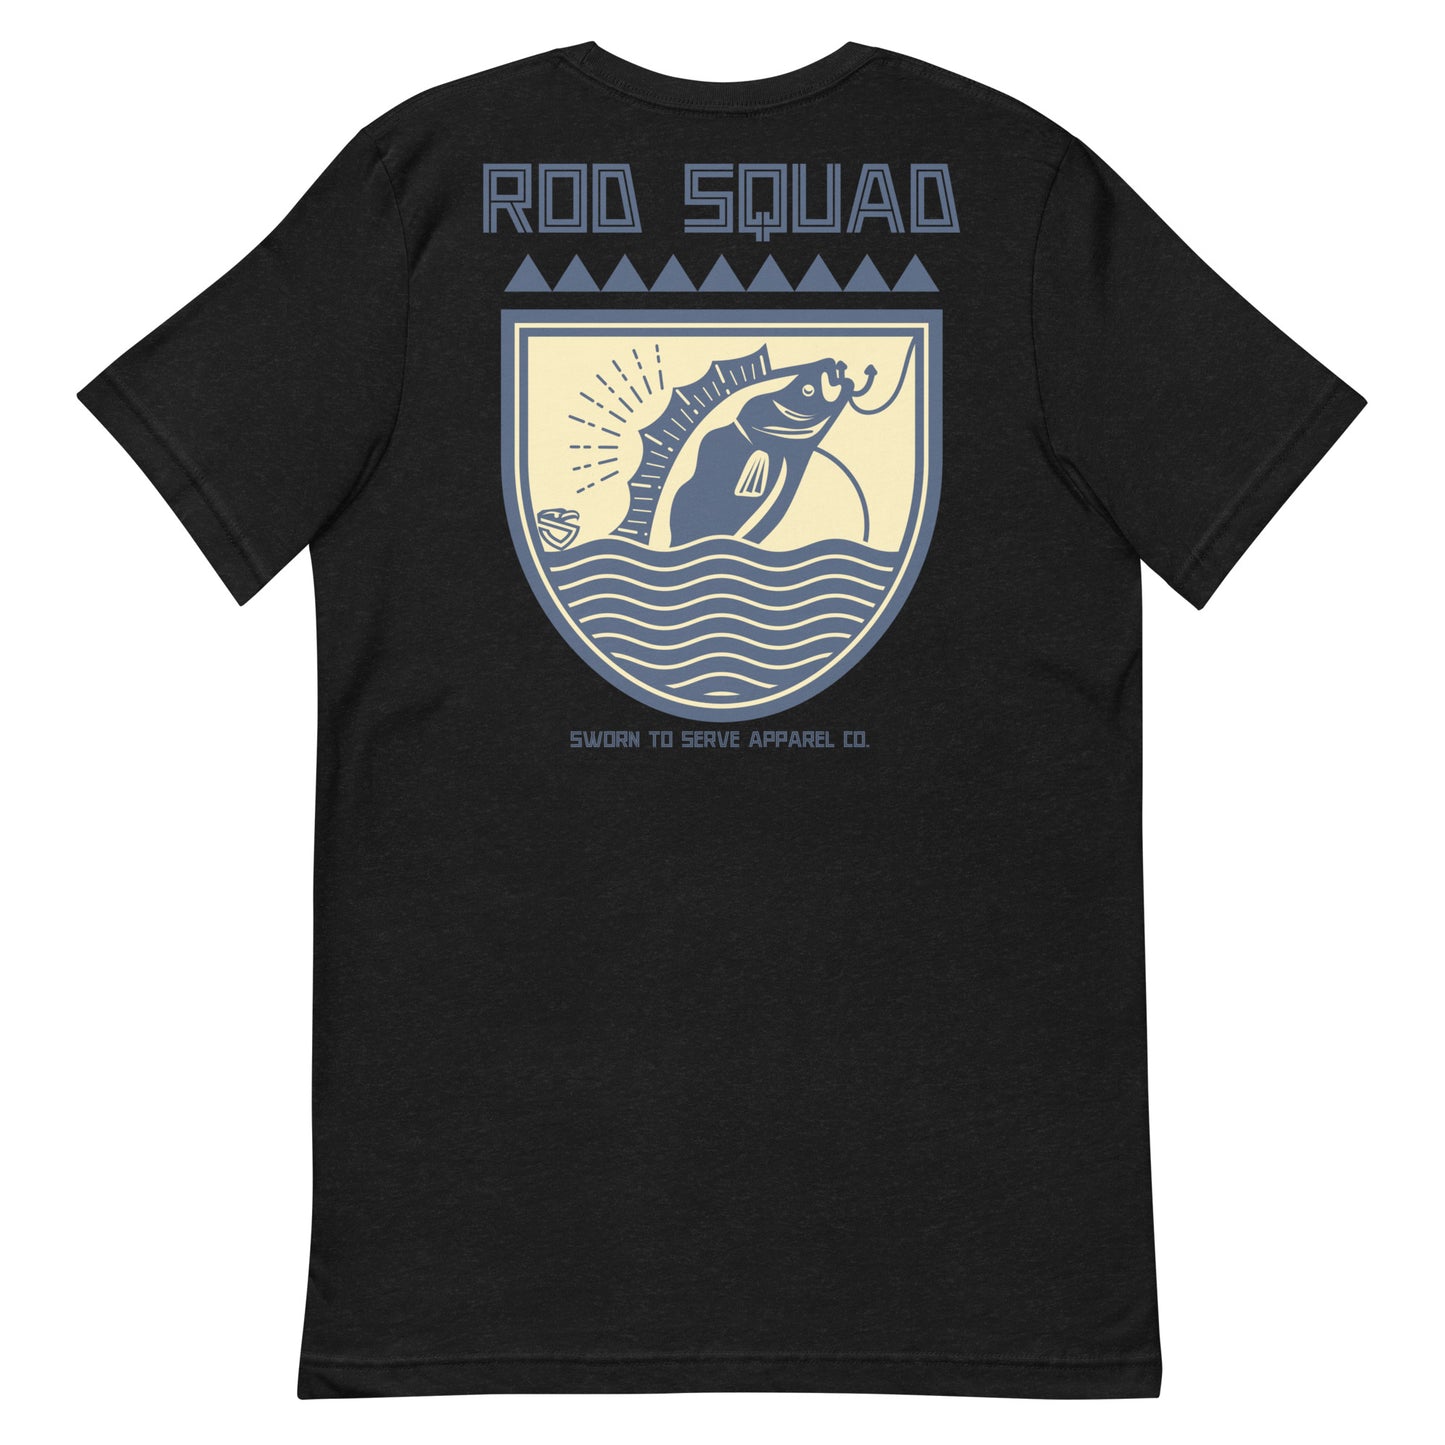 Rod Squad t-shirt